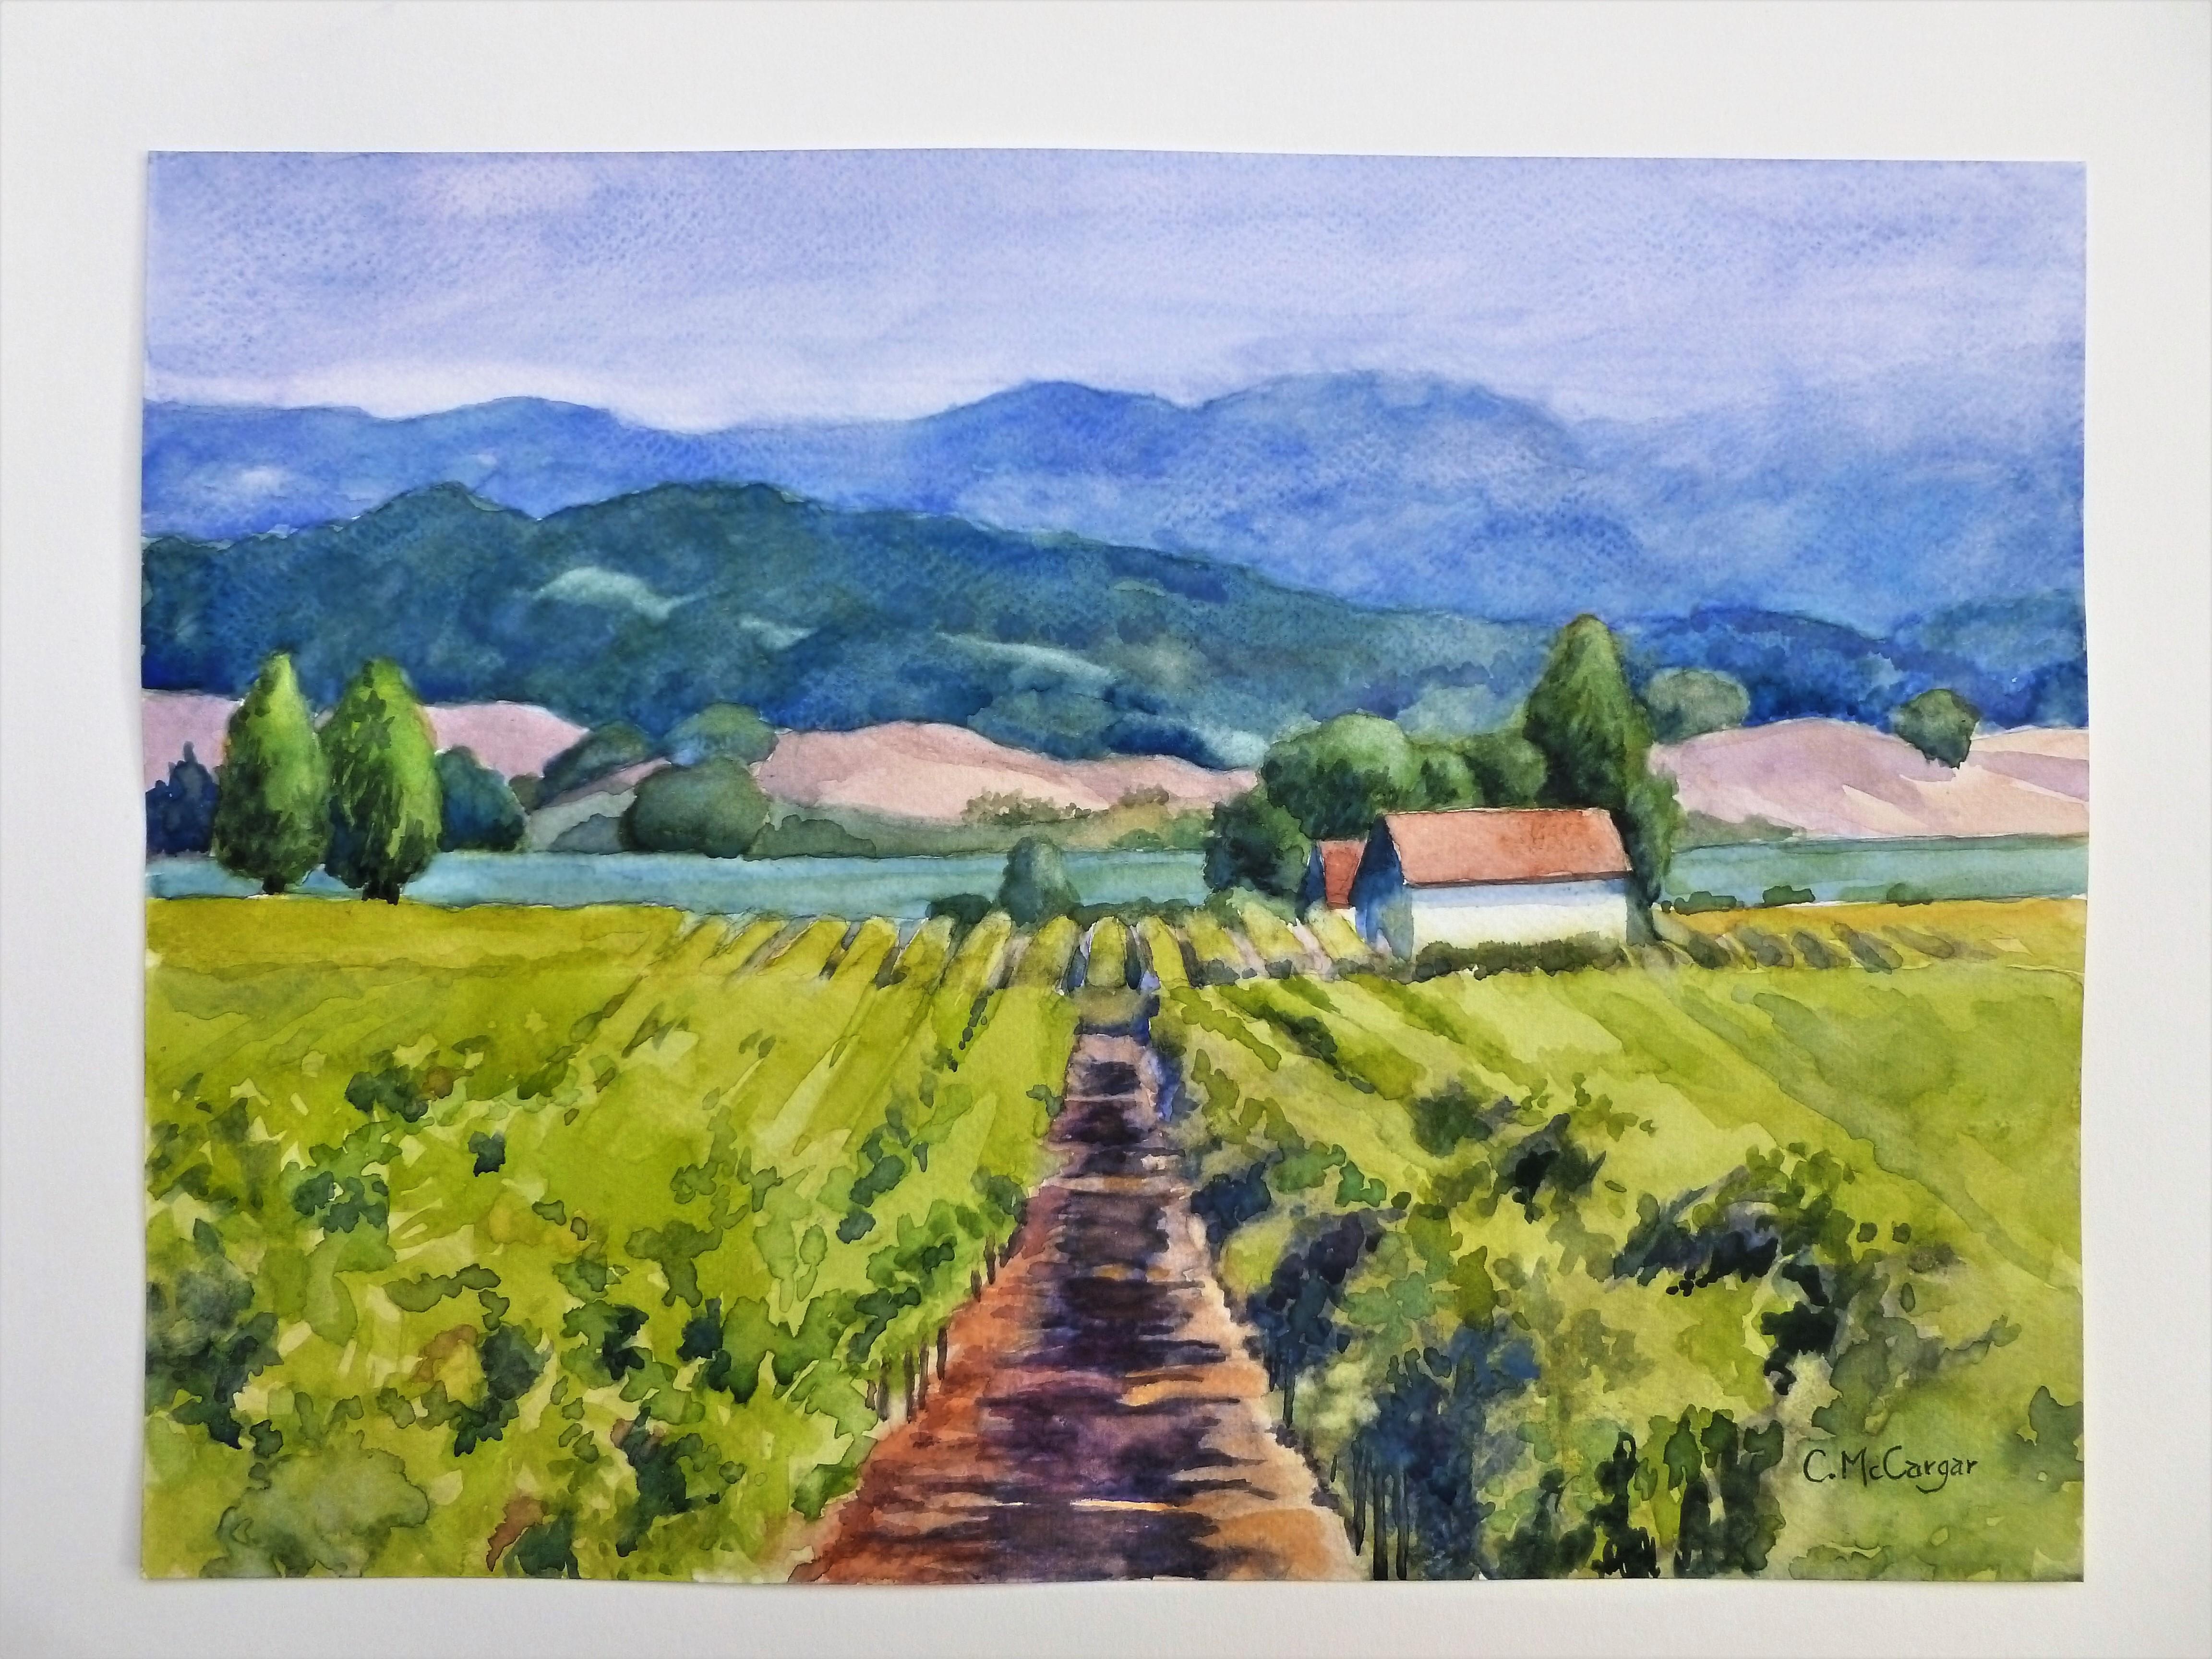 <p>Kommentare des Künstlers<br>Die Künstlerin Catherine McCargar malt einen lebendigen Weinberg, der unter der warmen Sonne gedeiht. 